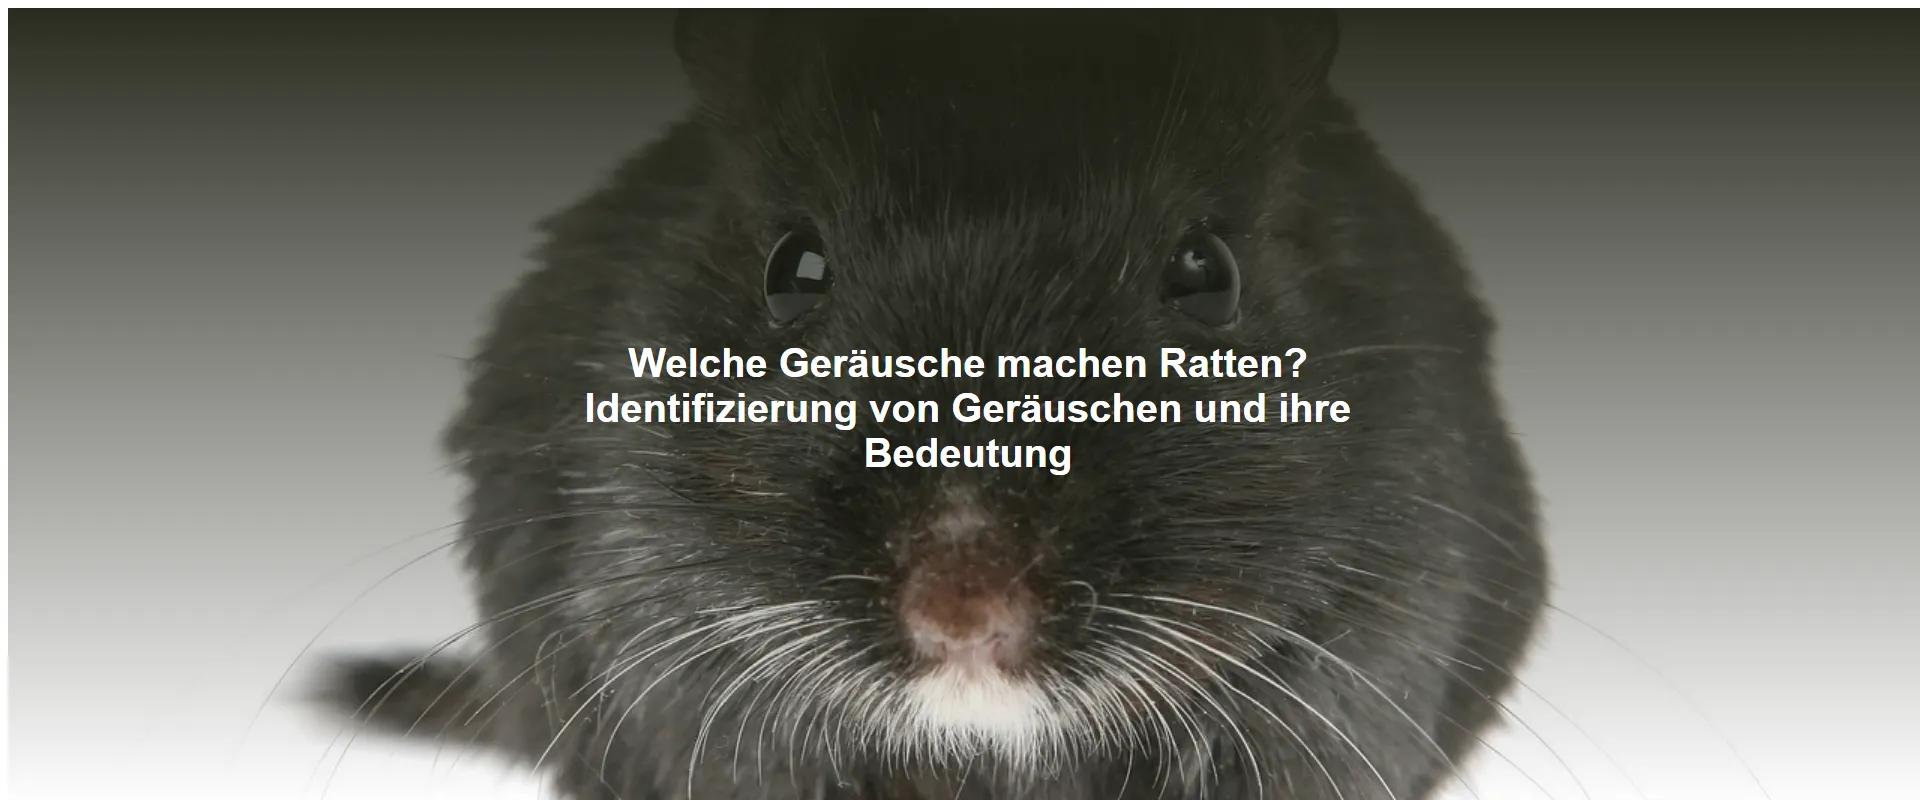 Welche Geräusche machen Ratten? Identifizierung von Geräuschen und ihre Bedeutung